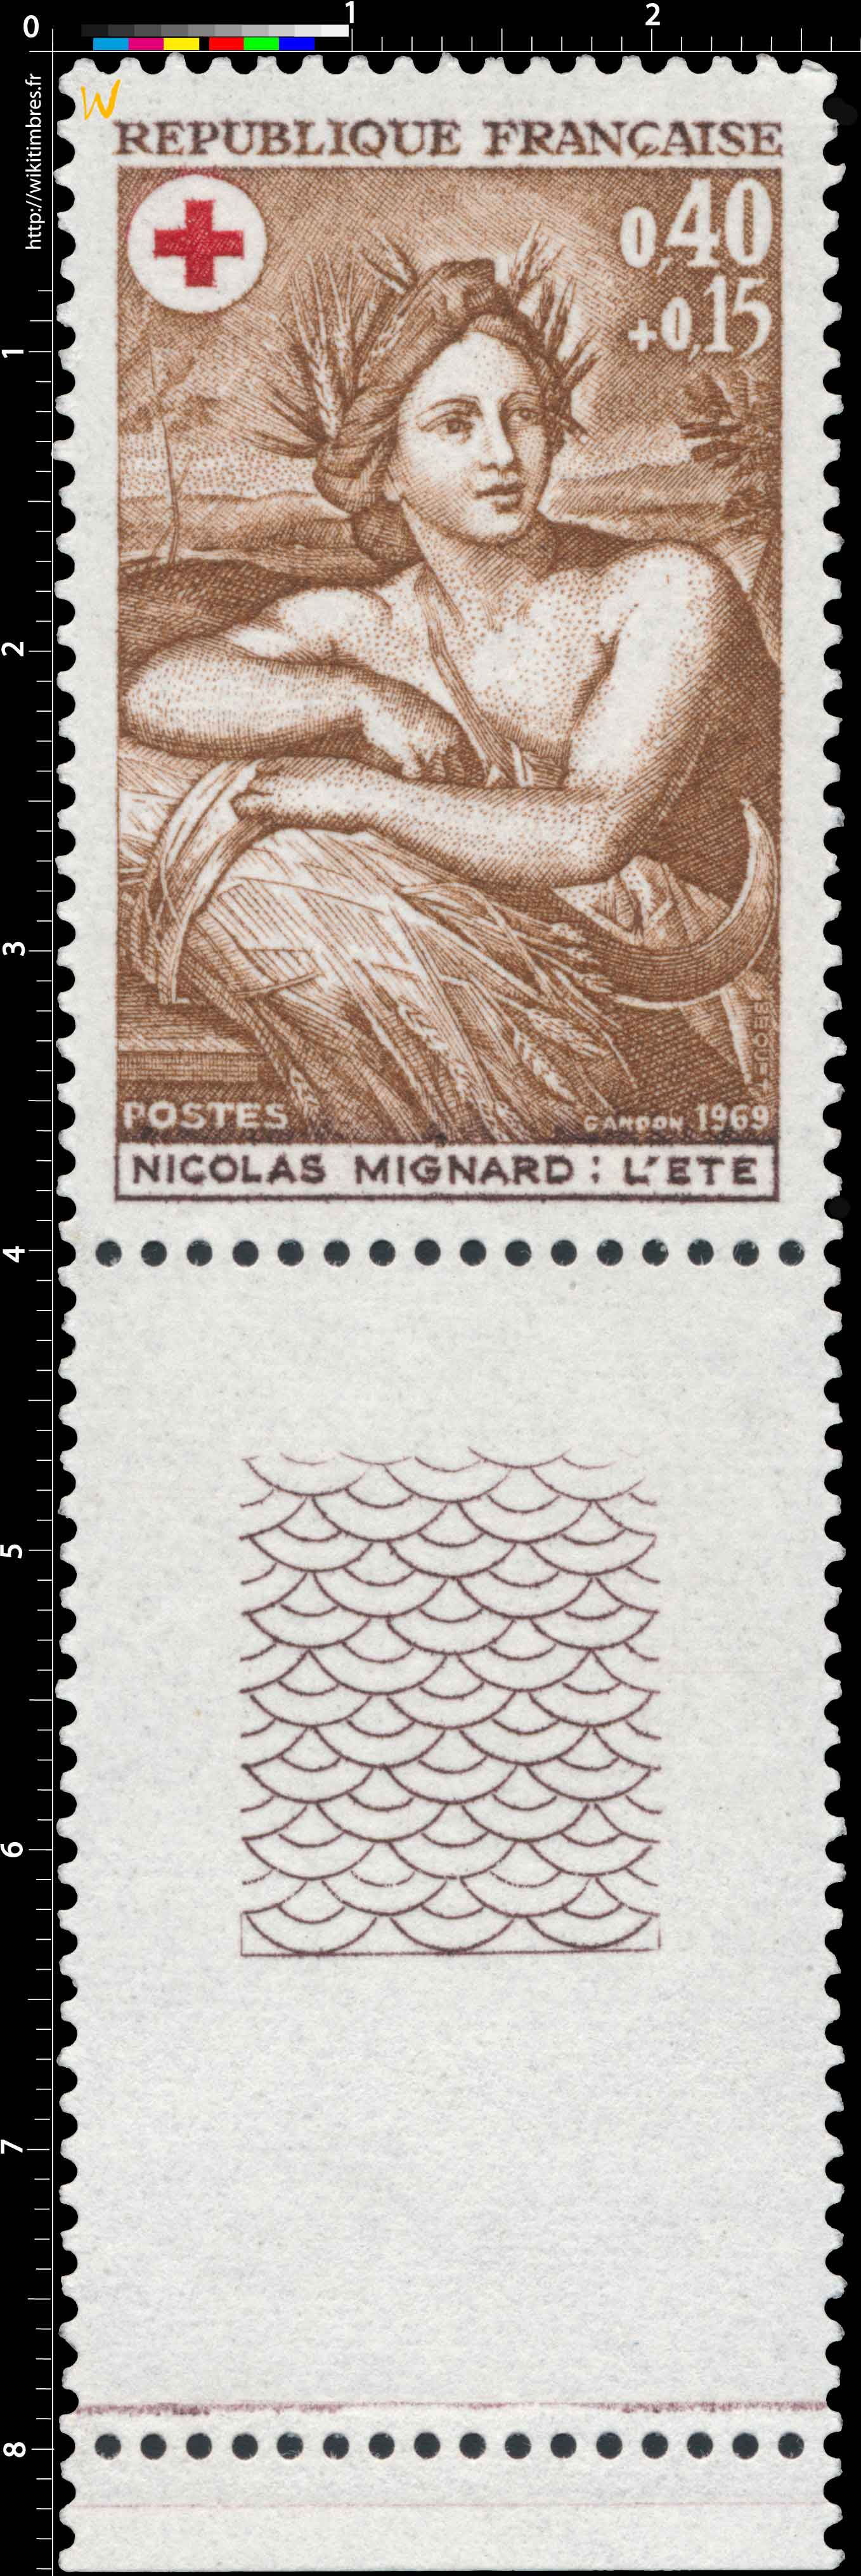 1969 NICOLAS MIGNARD : L'ÉTÉ